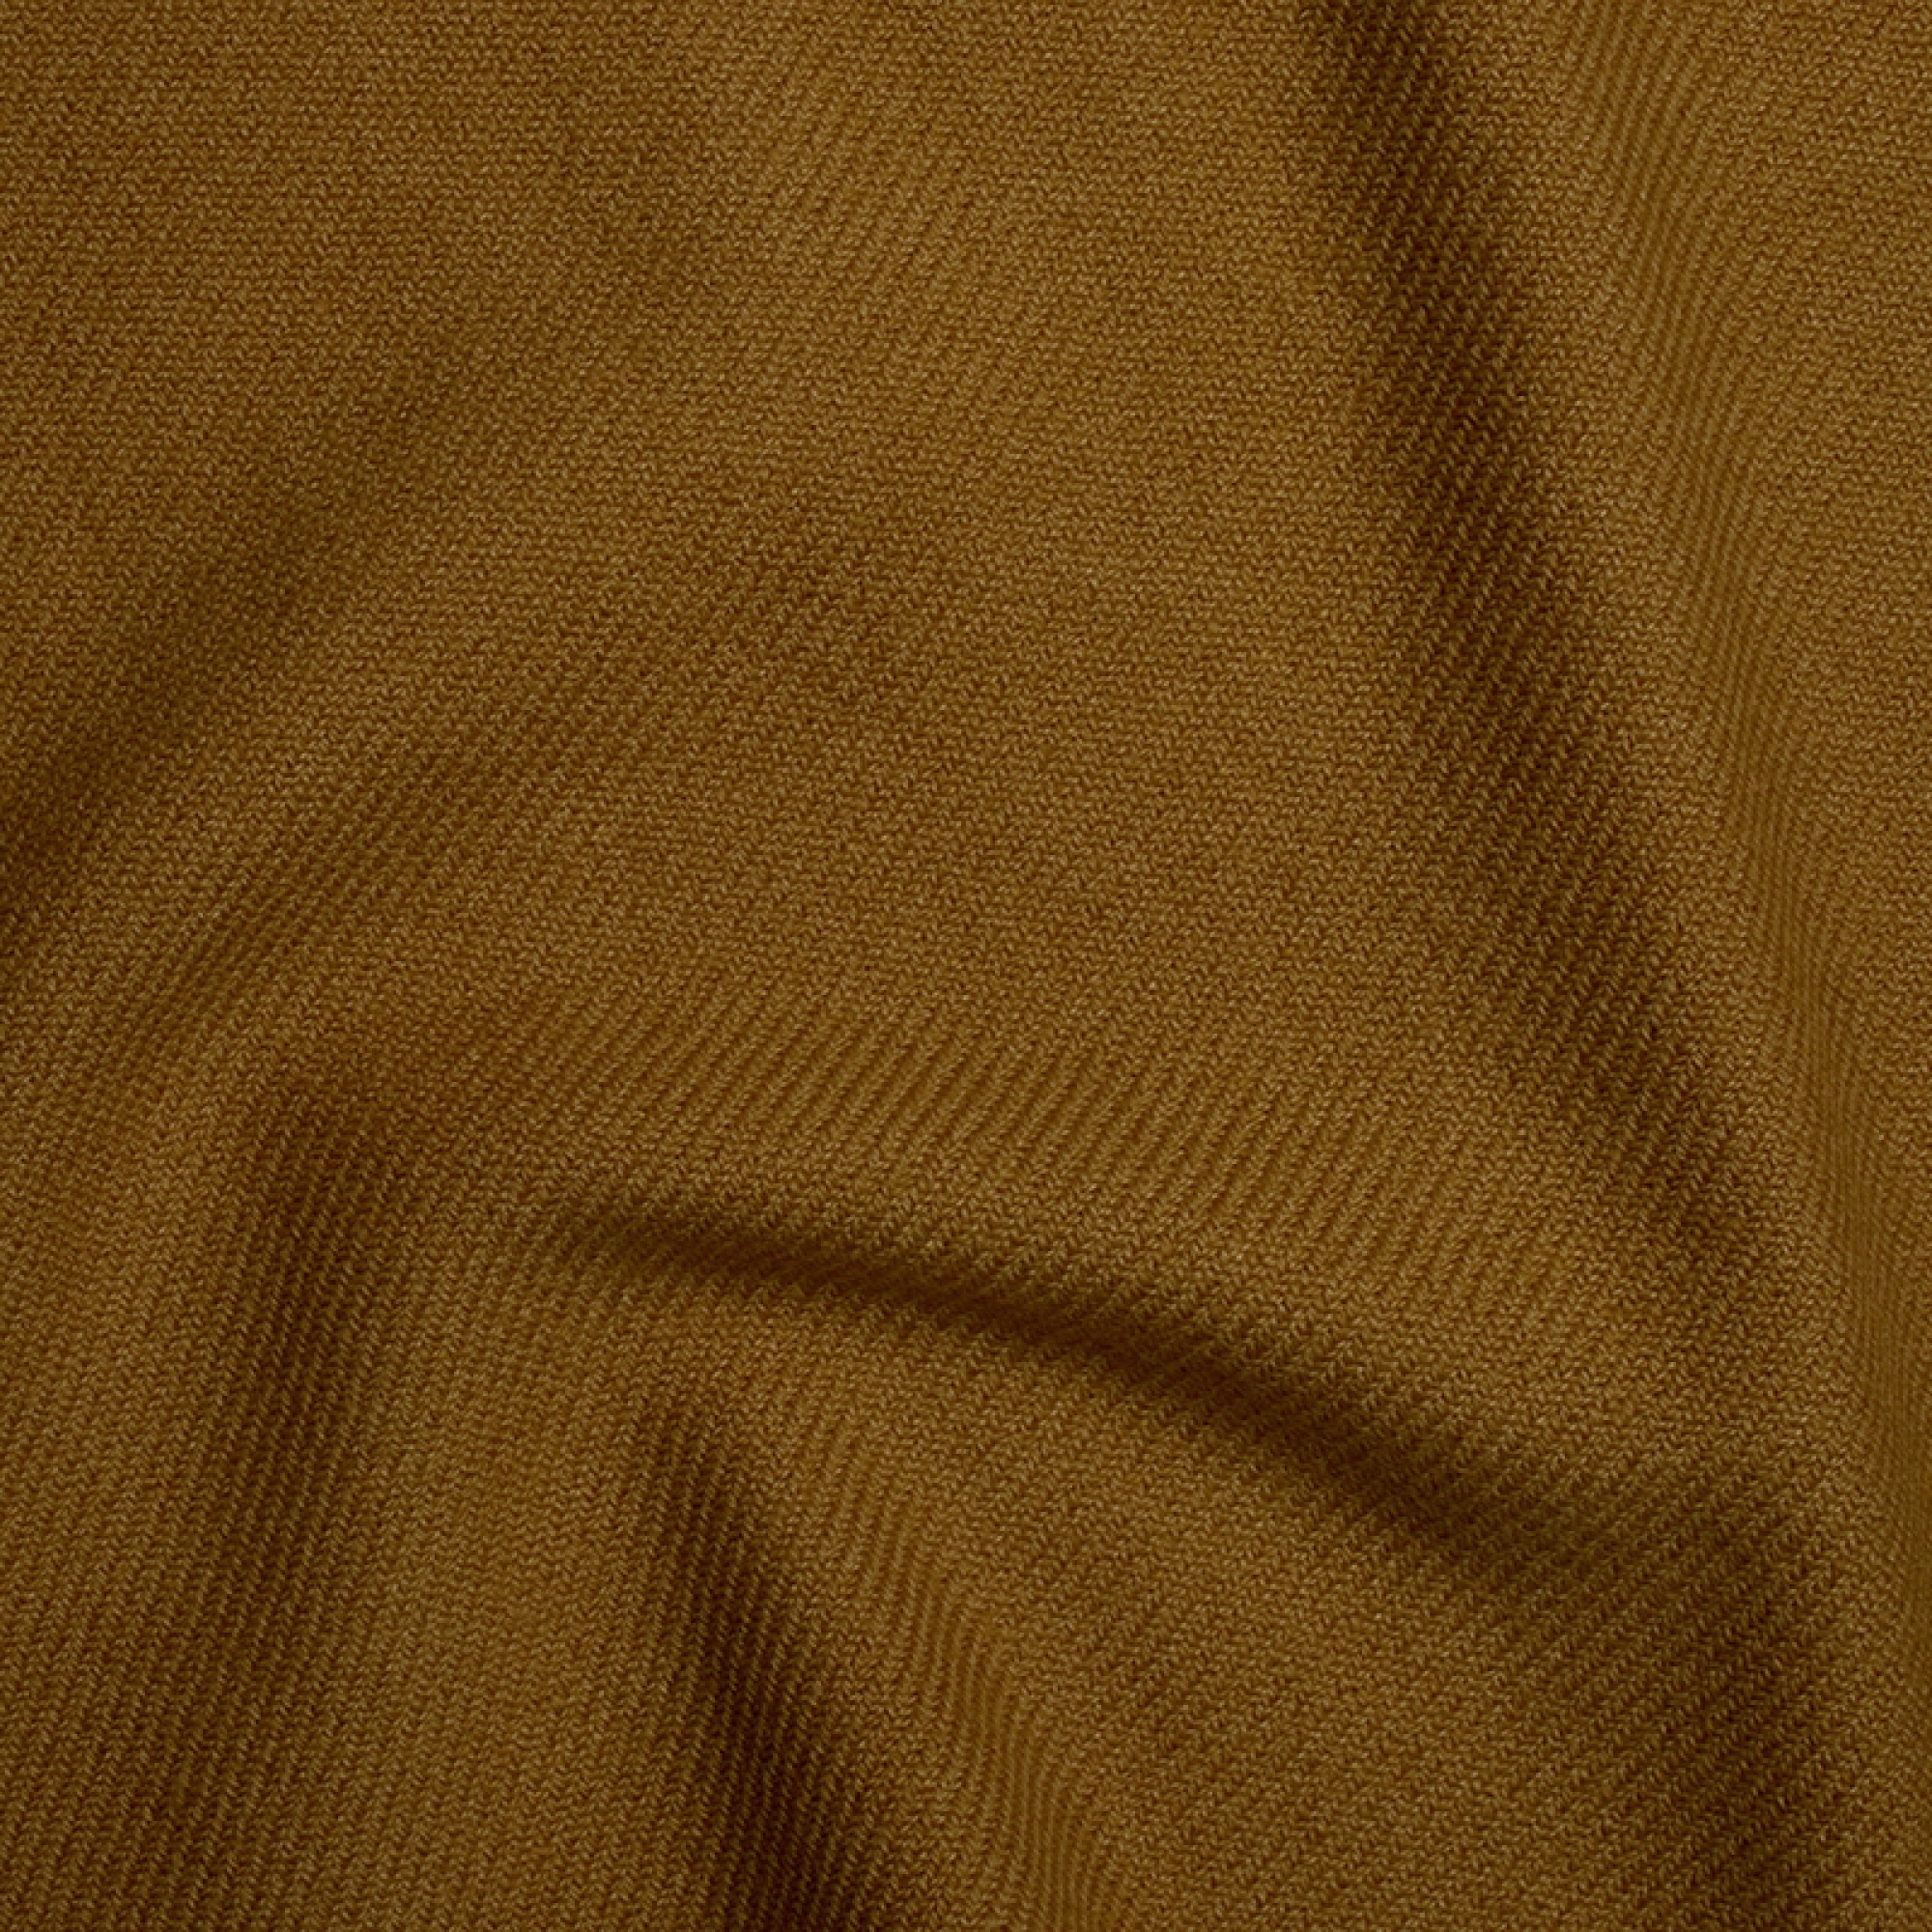 Cashmere cashmere donna toodoo plain l 220 x 220 burro di arachidi 220x220cm